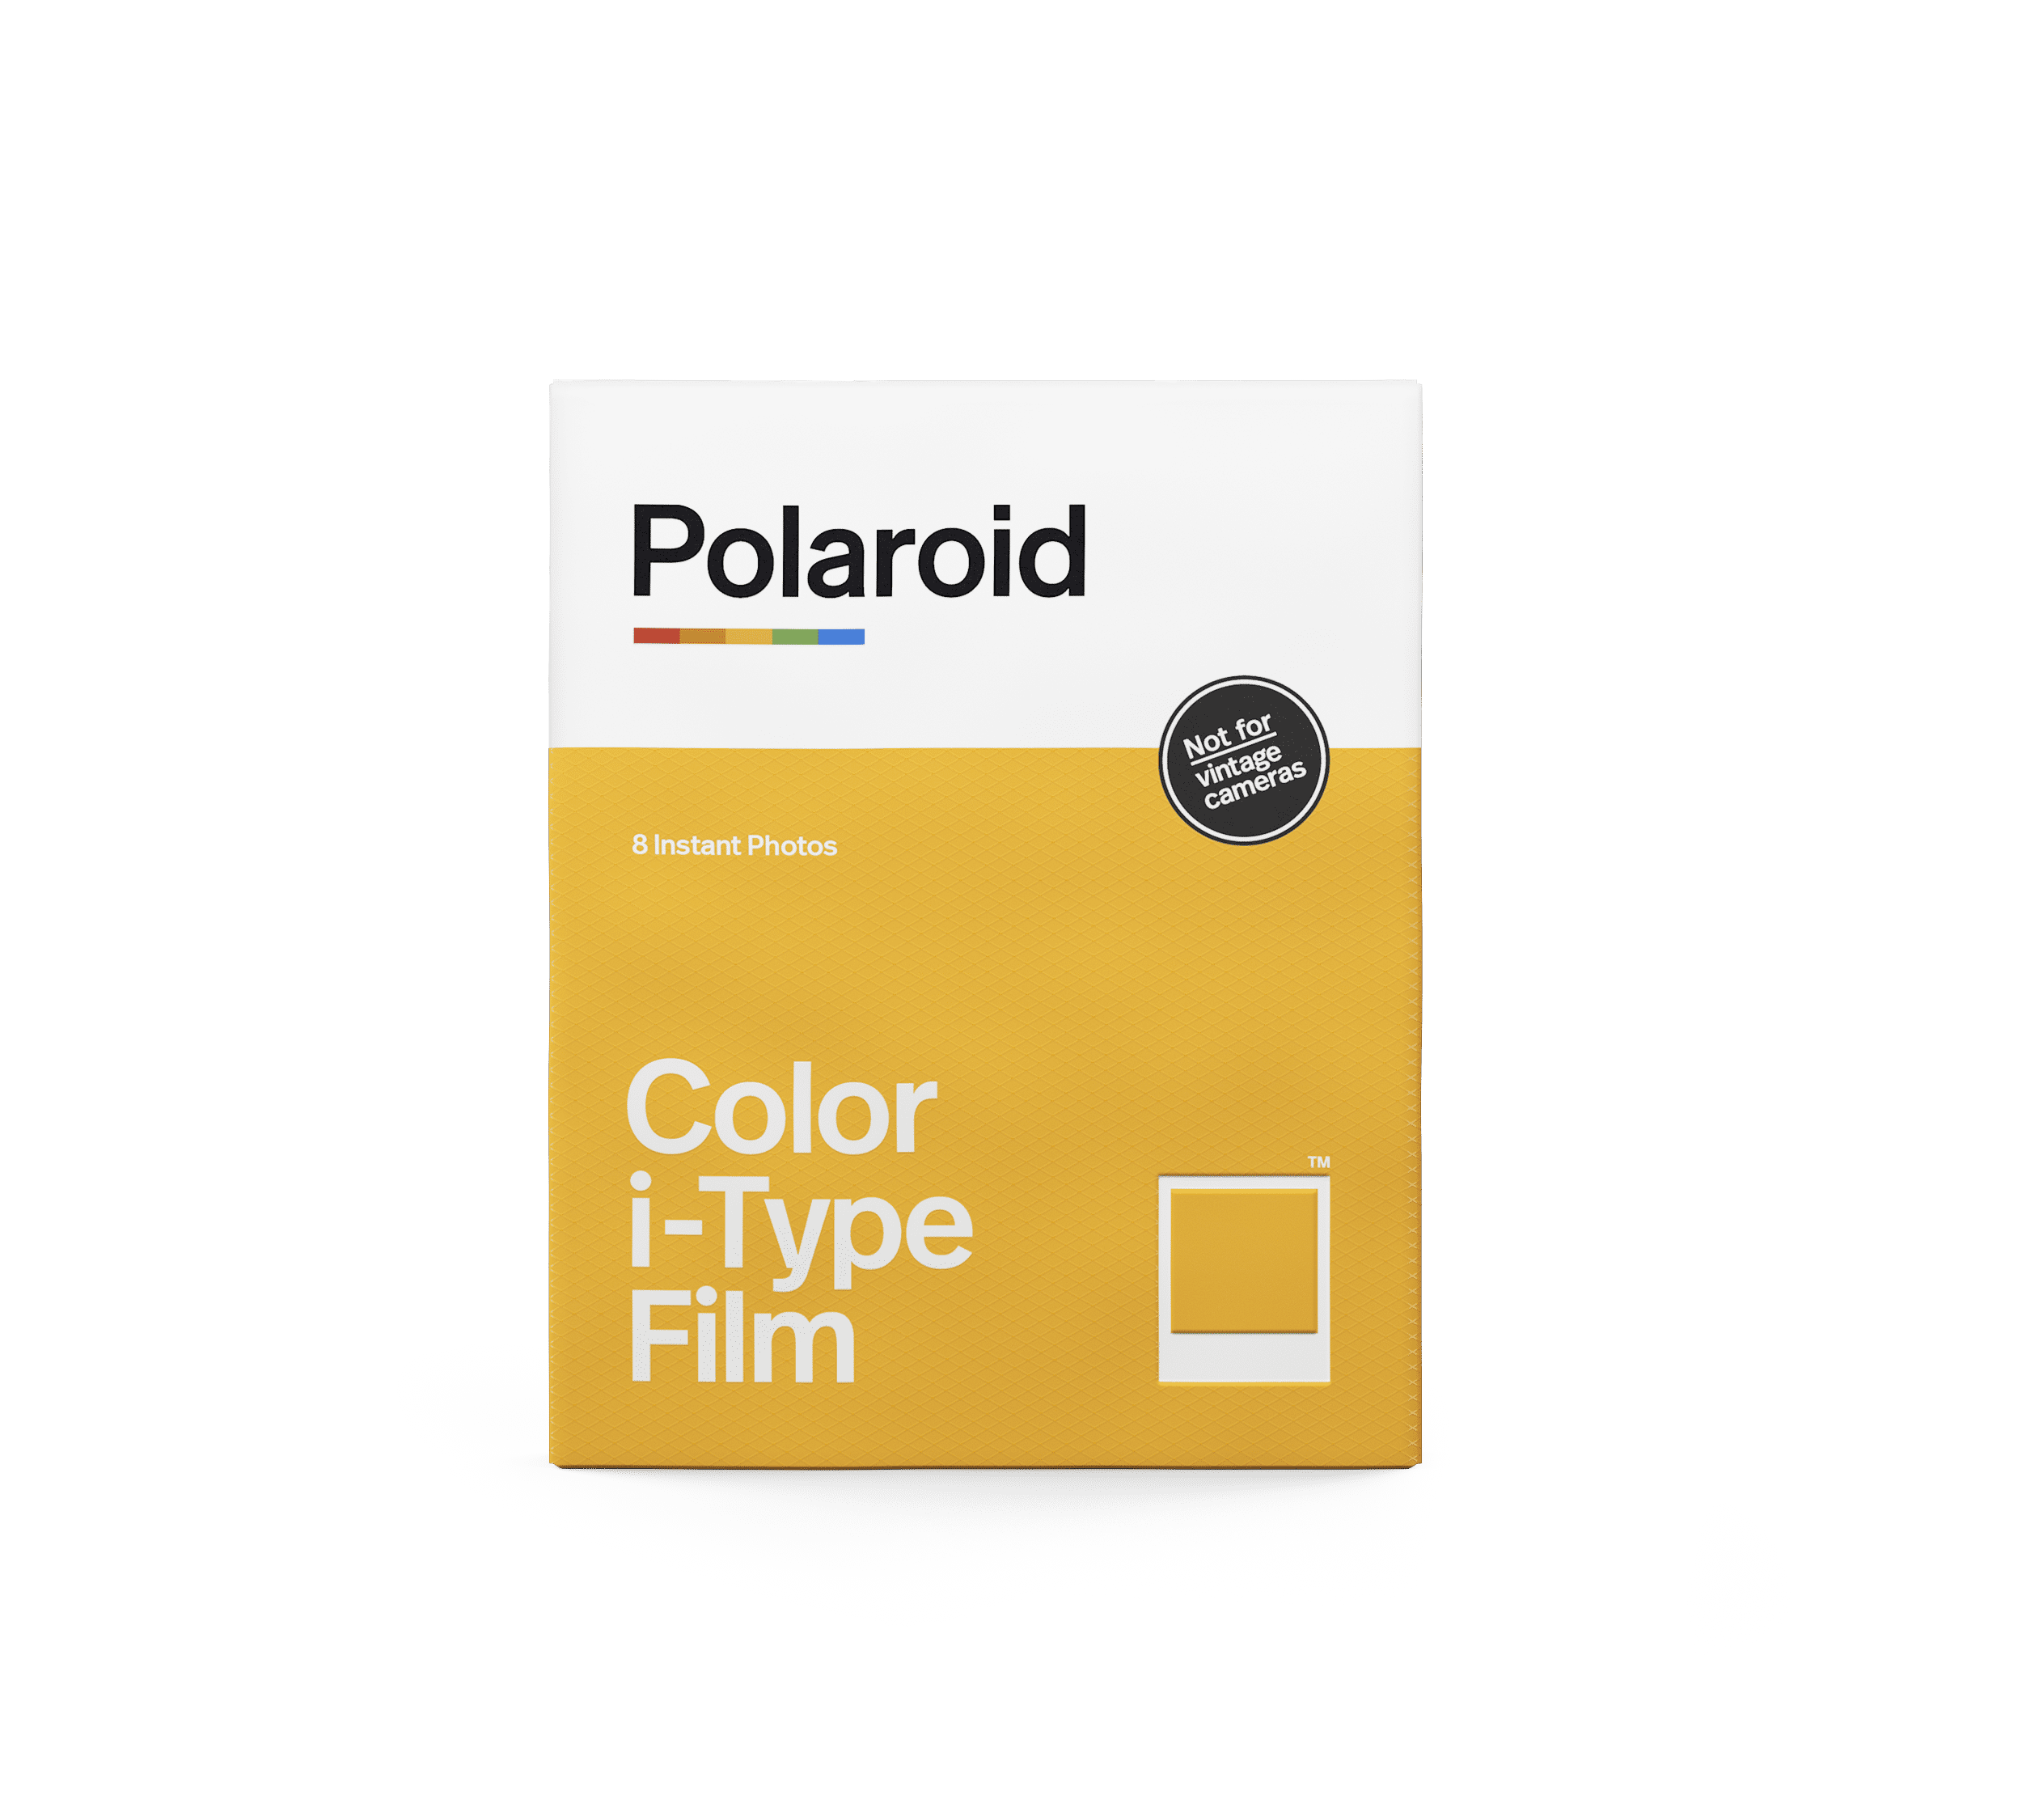 Polaroid film couleur i-type - spectrum edition POLAROID Pas Cher